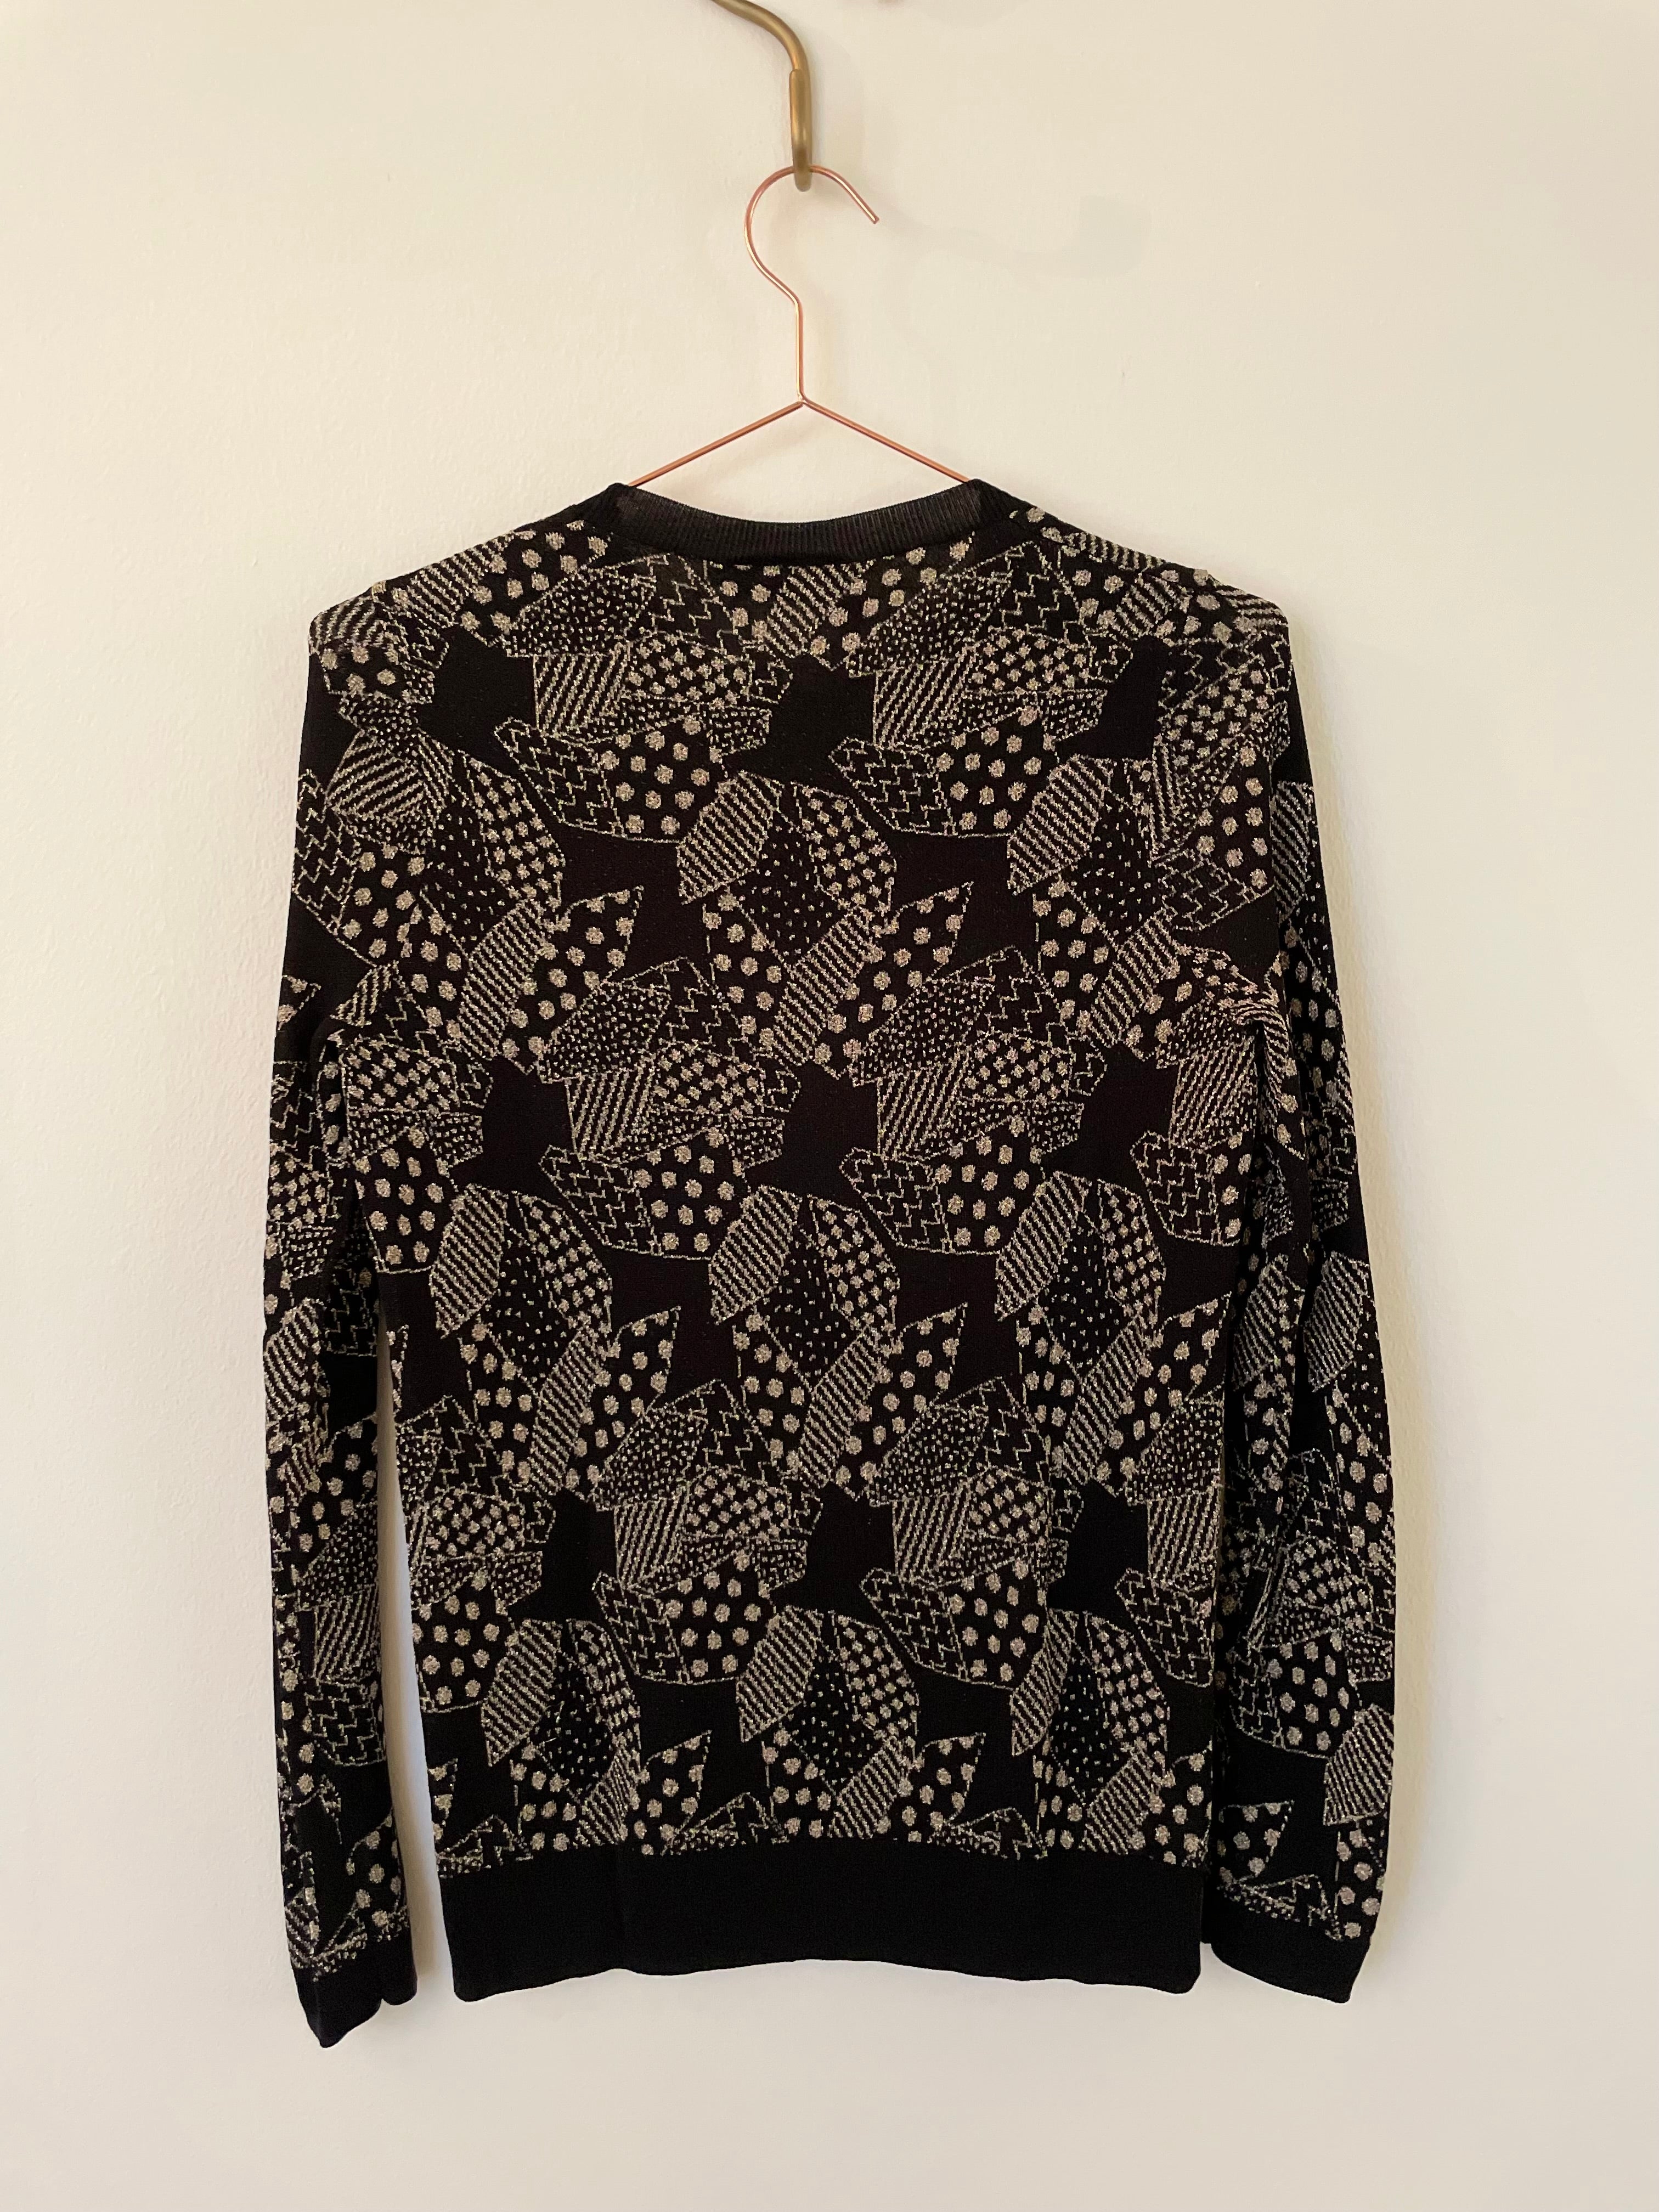 Black & metallic knit jumper - THE KOOPLES - S